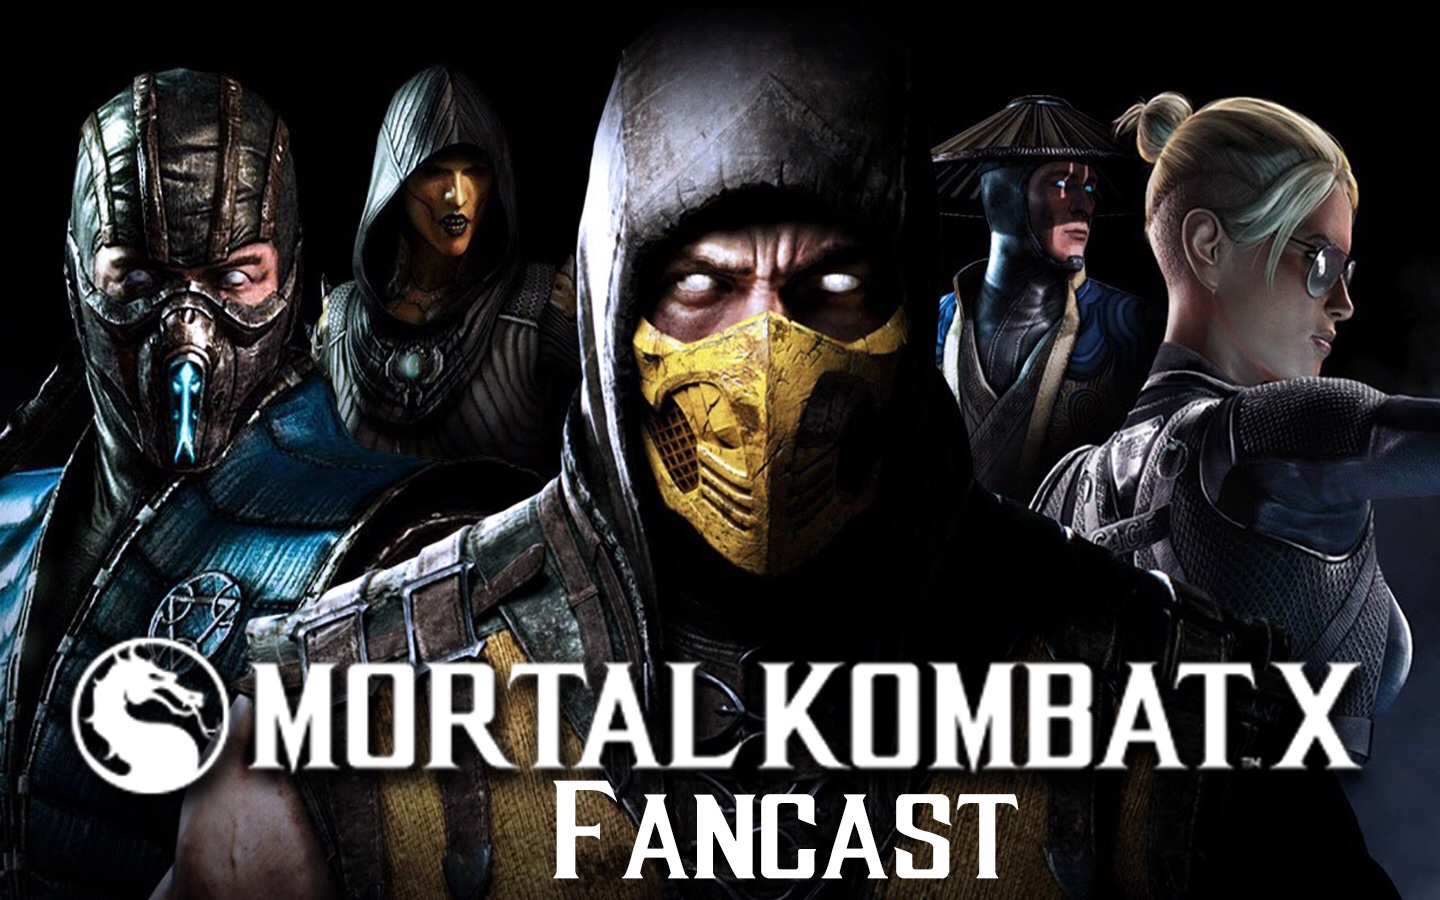 ‘Mortal Kombat X’ Live Action Fancast